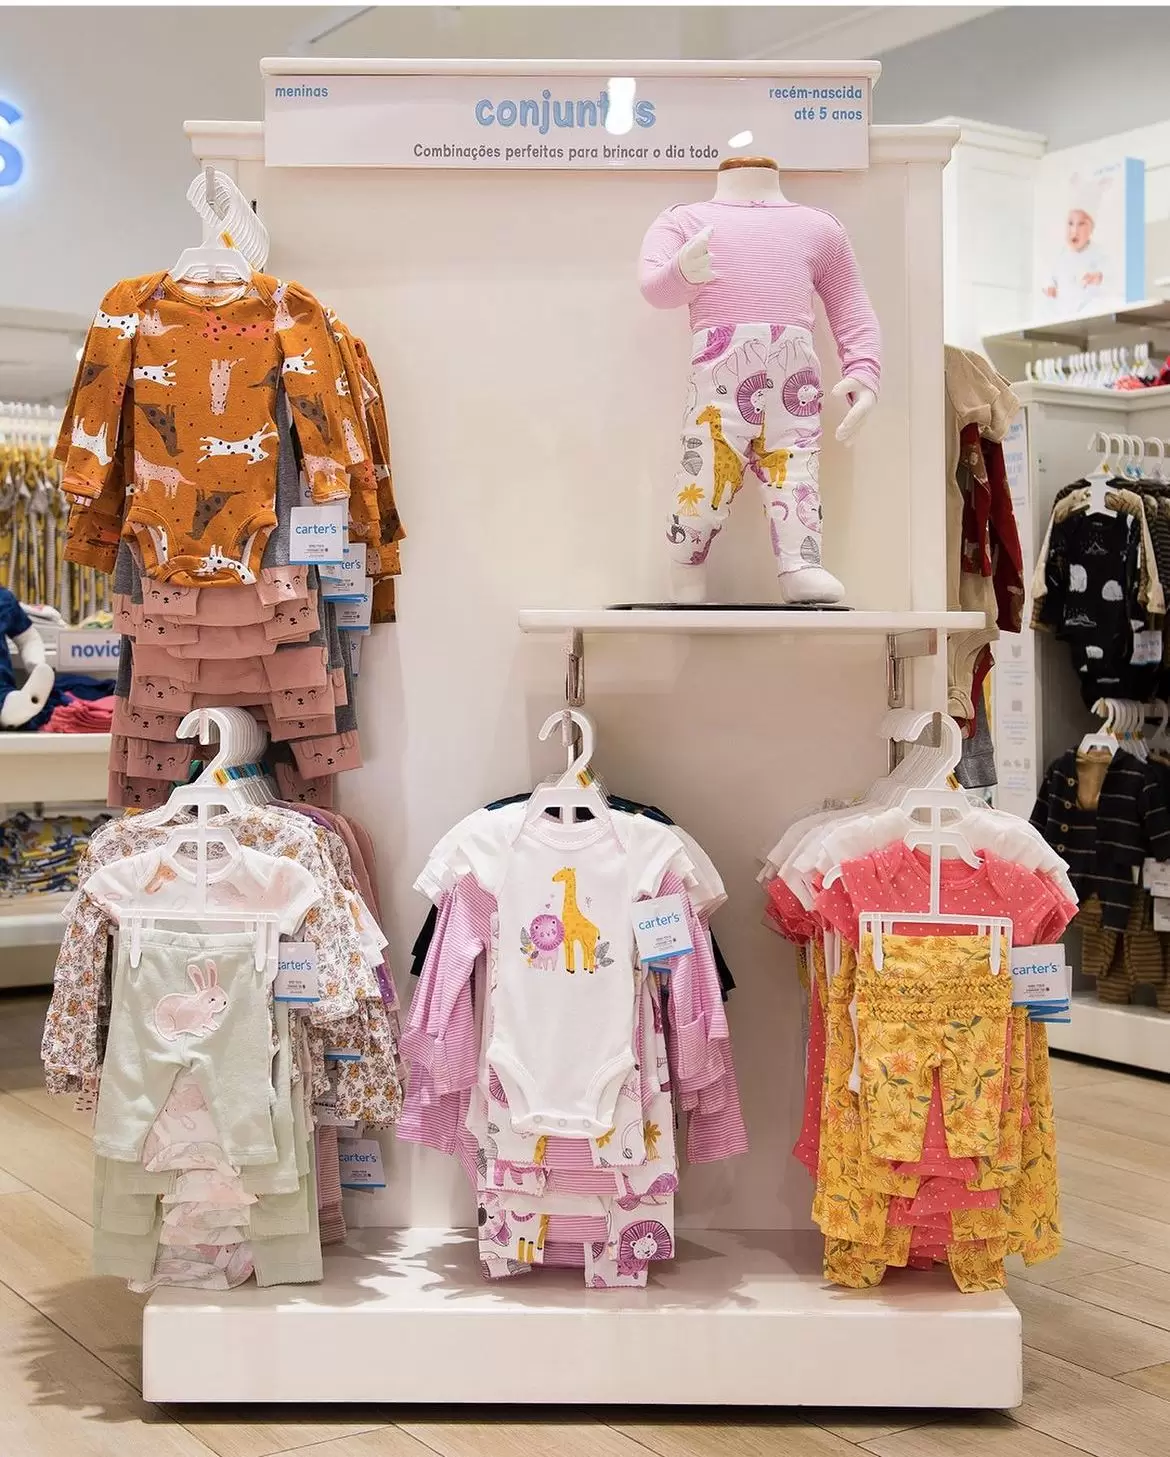 Carter’s, marca internacional de roupas para o público infantil, inaugura nesta quinta-feira, no Balneário Shopping